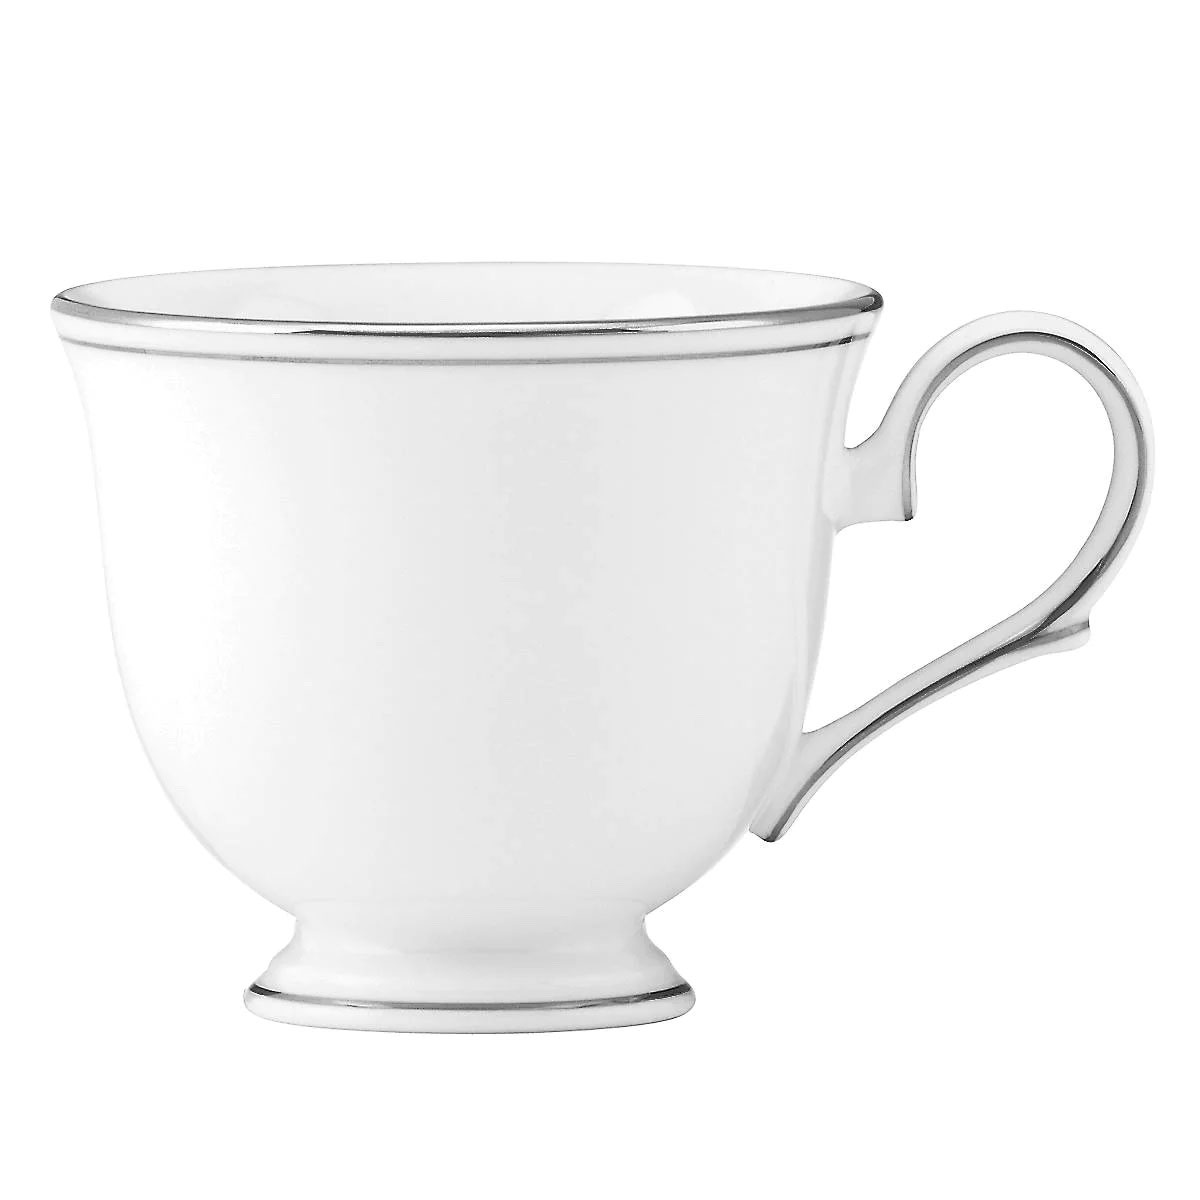 Lenox Federal Platinum Tea Cup